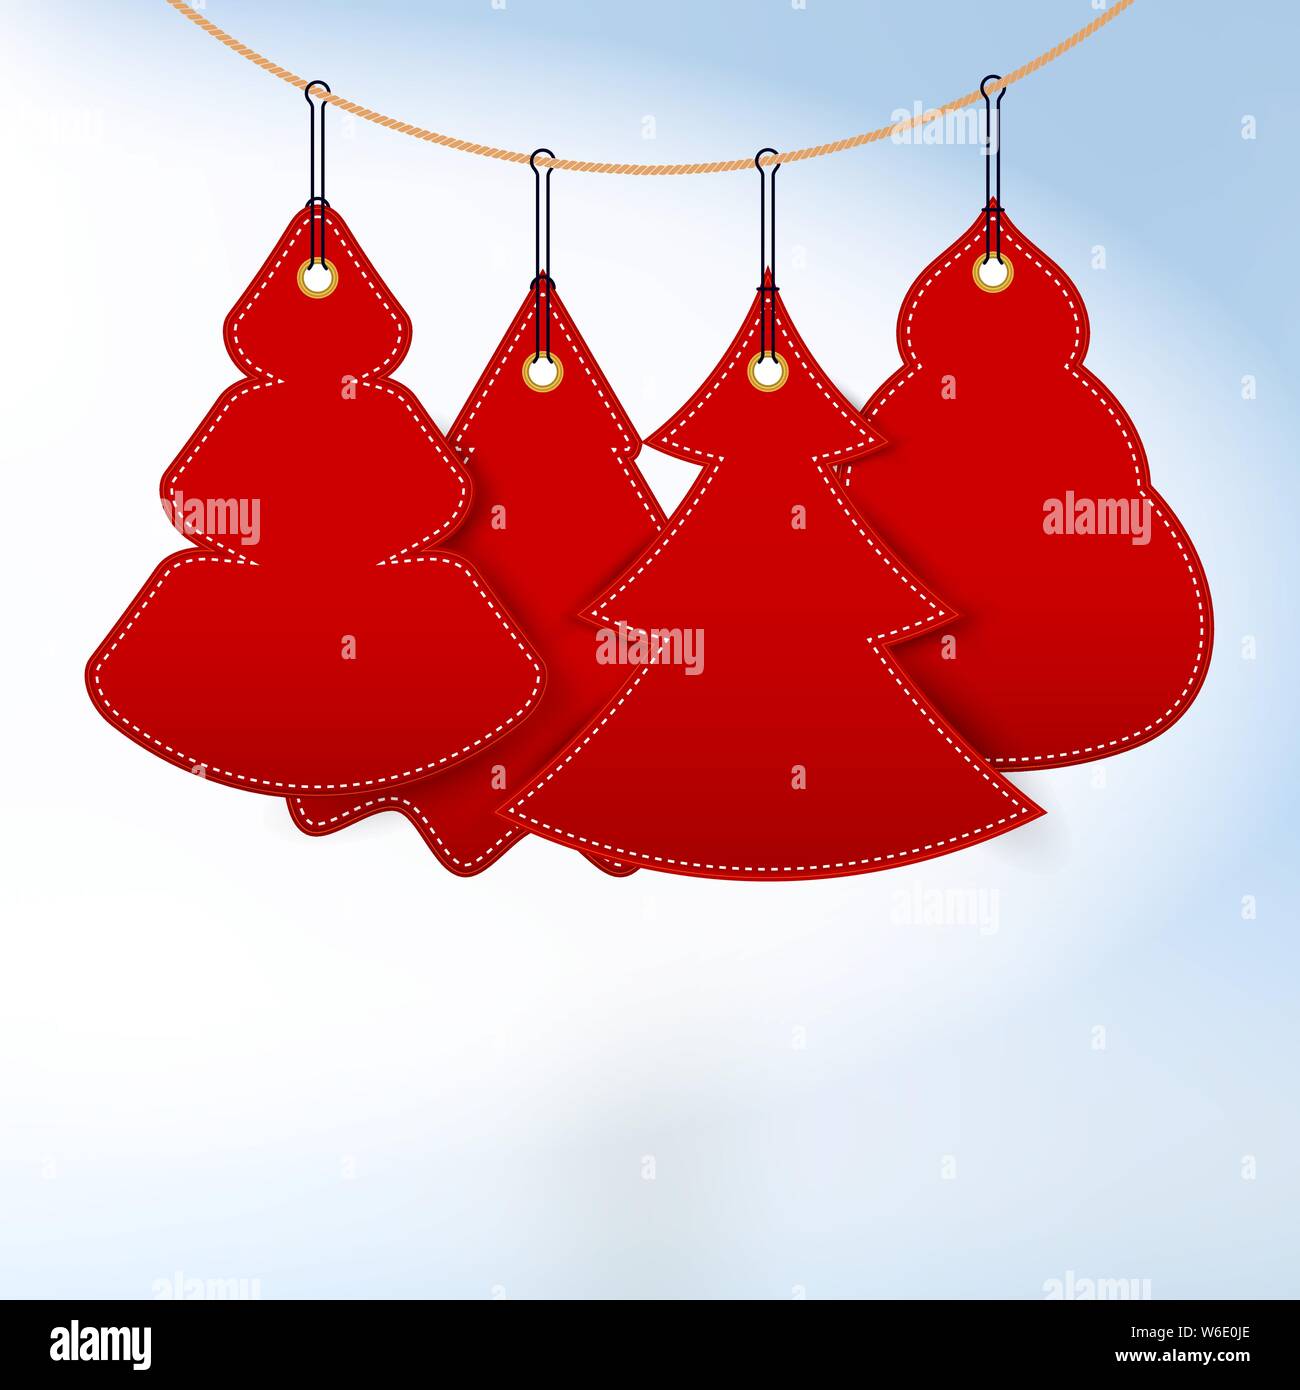 Hängende Einfache Weihnachtsbäume. Leeres rotes Papier schneiden Weihnachtsbäume. Hintergrund, Vorlage. Weihnachten Grußkarte. Vector Illustration. Stock Vektor